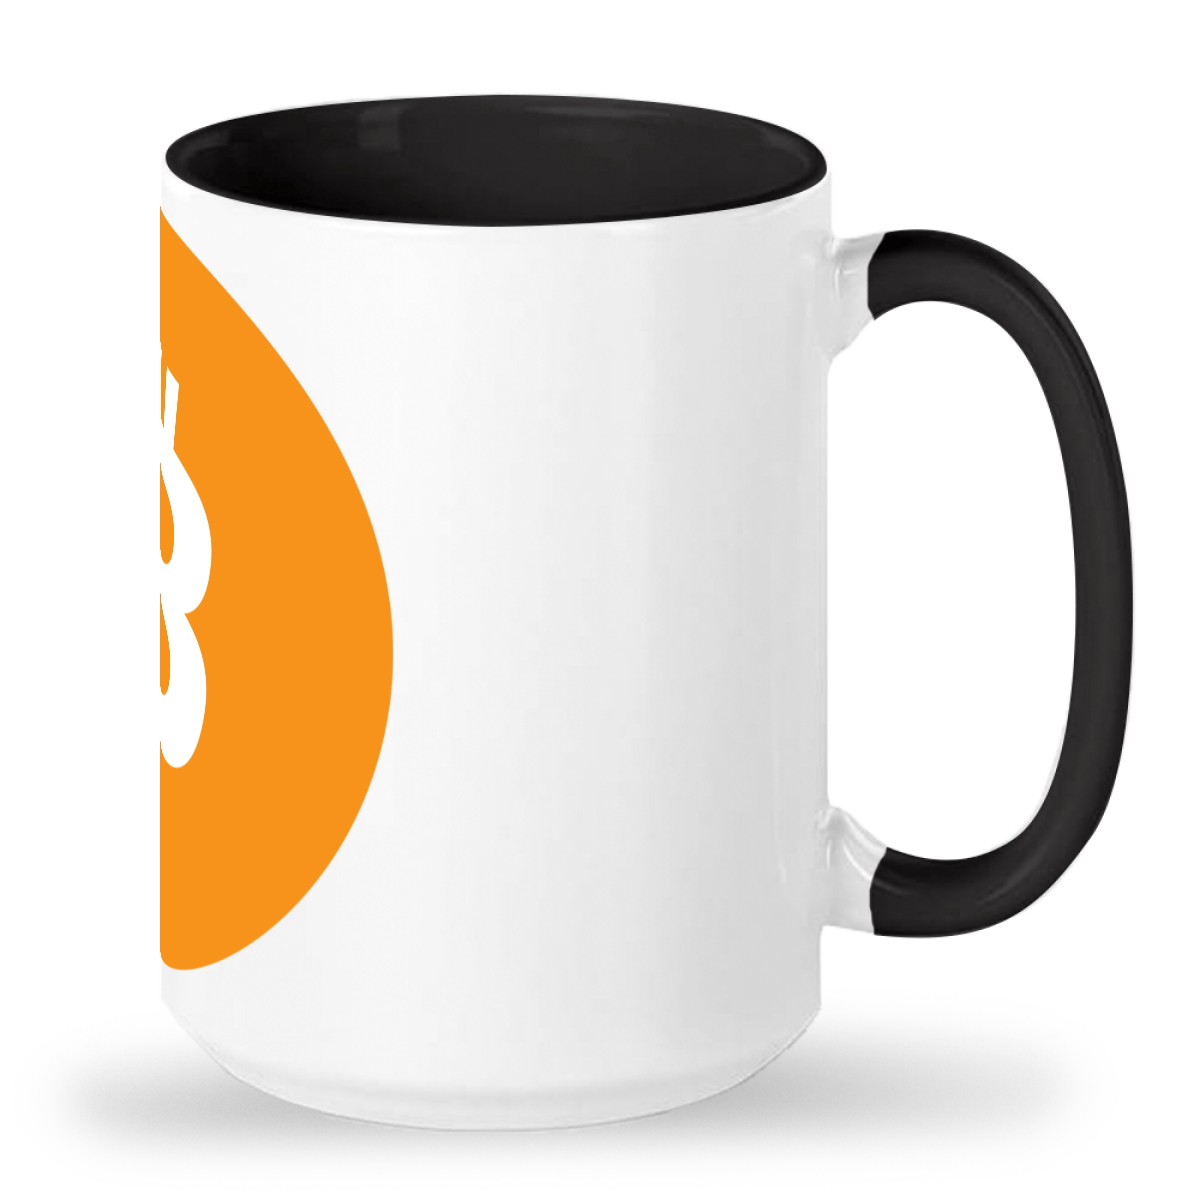 Bitcoin Mug